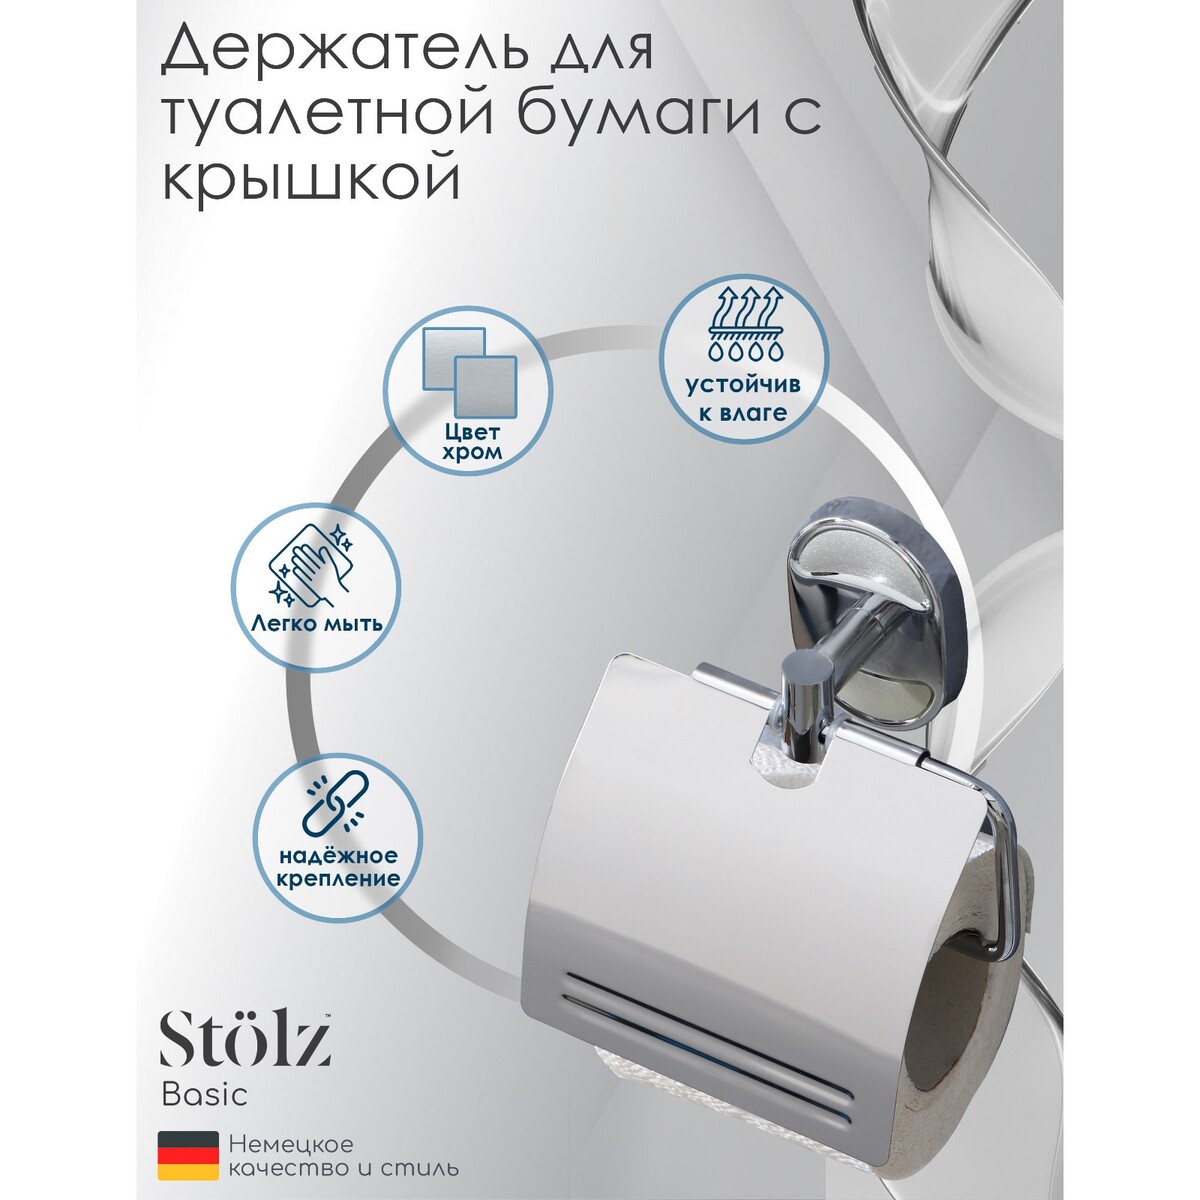 Держатель для туалетной бумаги с крышкой штольц stölz держатель для туалетной бумаги штольц stölz 14×16×13 см хром